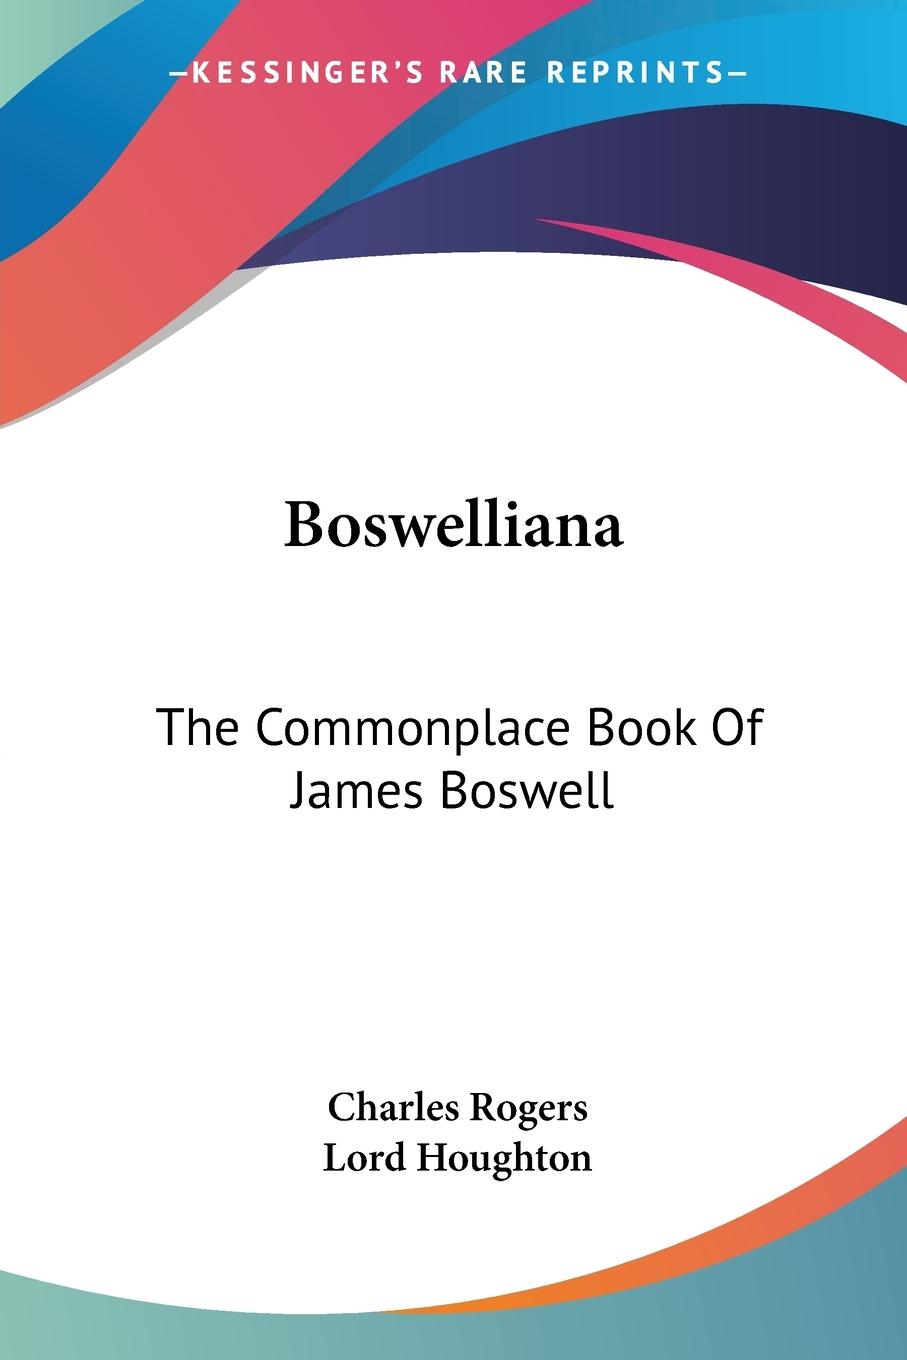 Boswelliana - Rogers, Charles